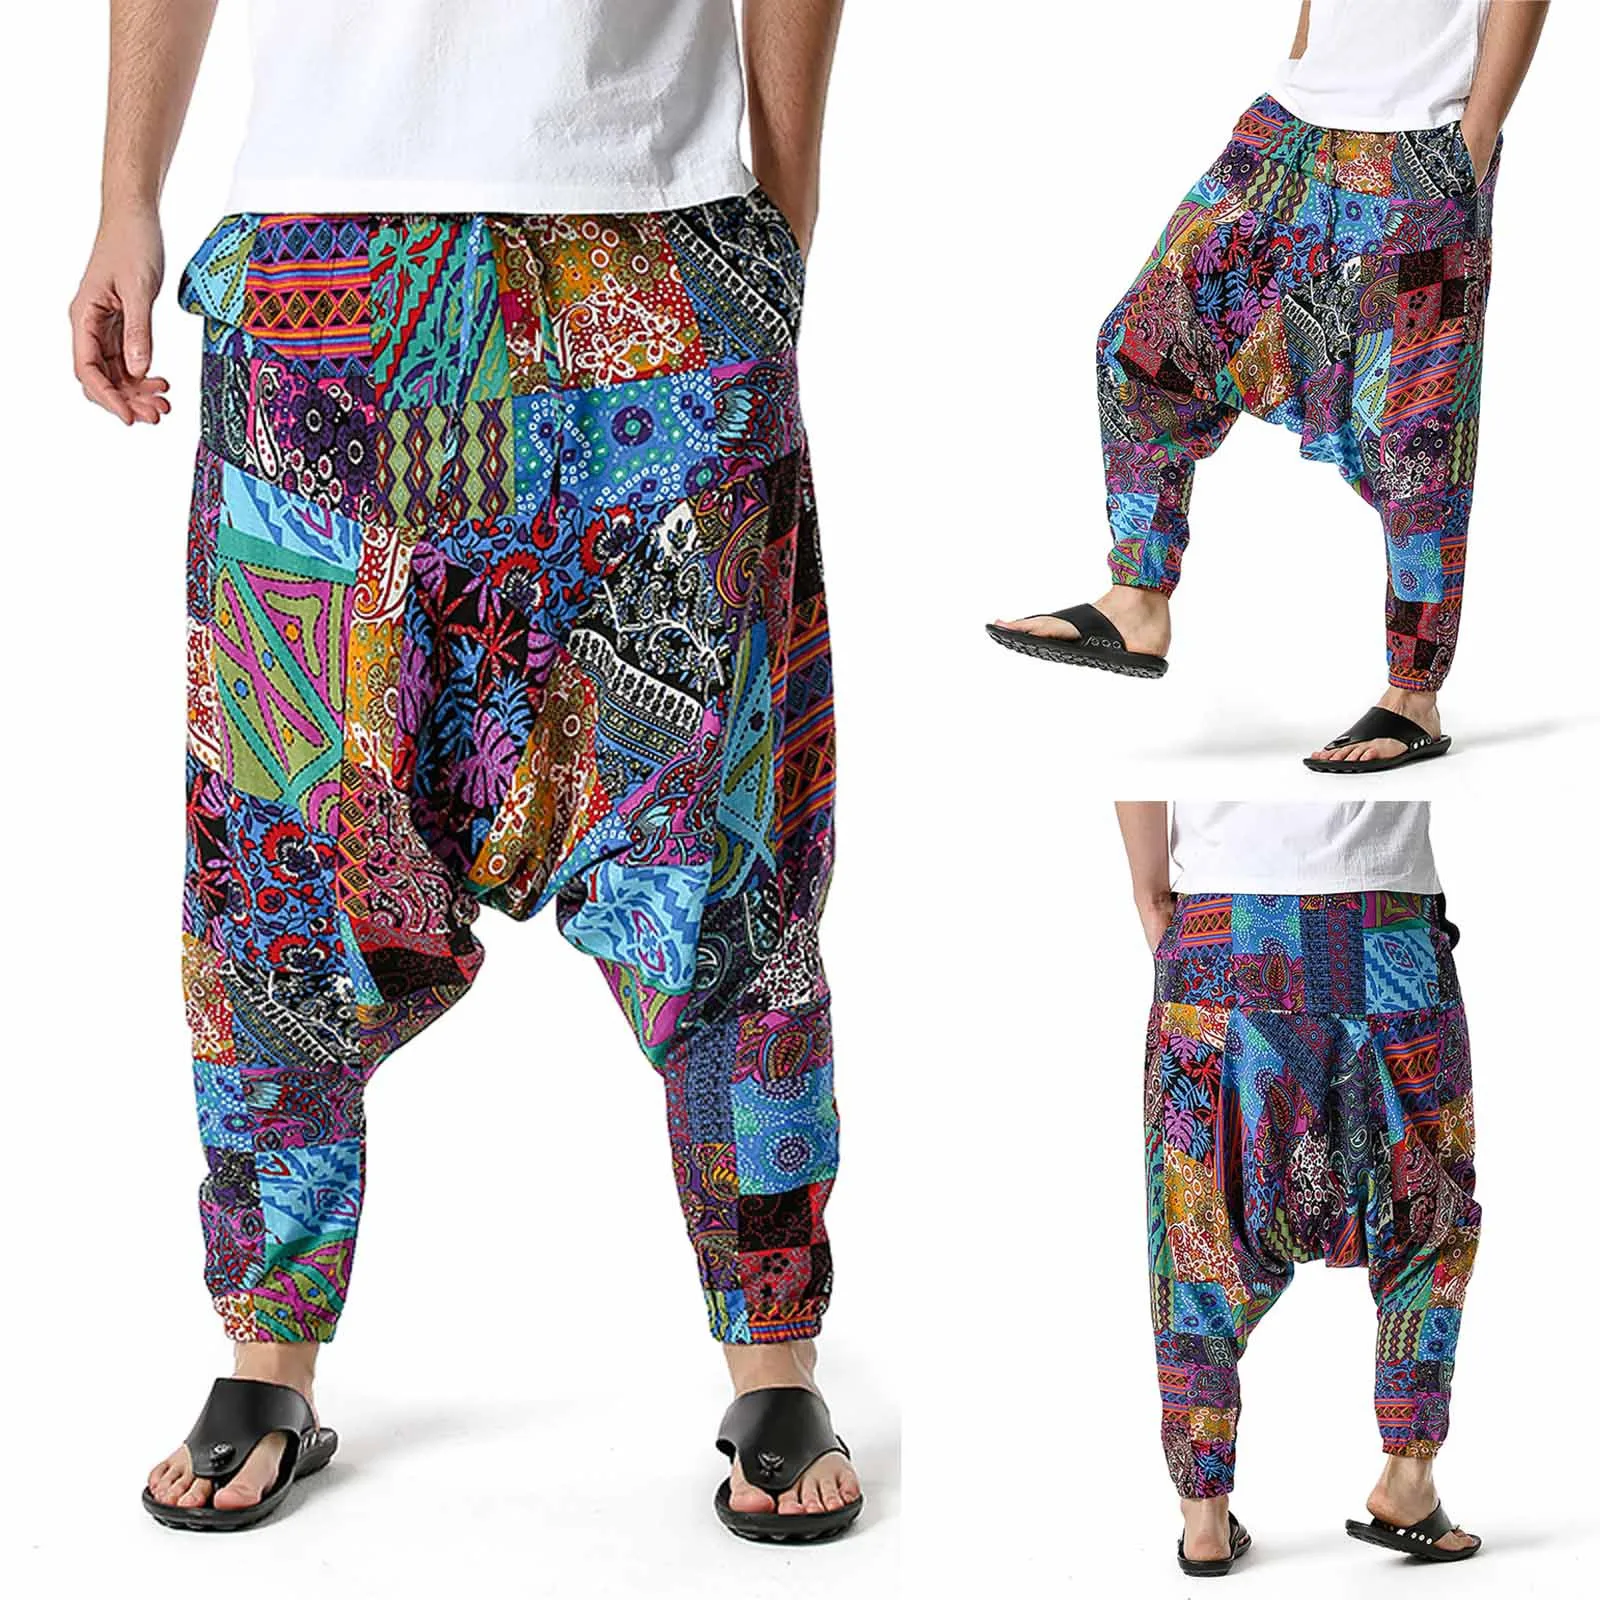 

Брюки мужские из хлопка и льна, Свободные Повседневные Легкие штаны с эластичным поясом, домашние длинные штаны, в стиле хип-хоп